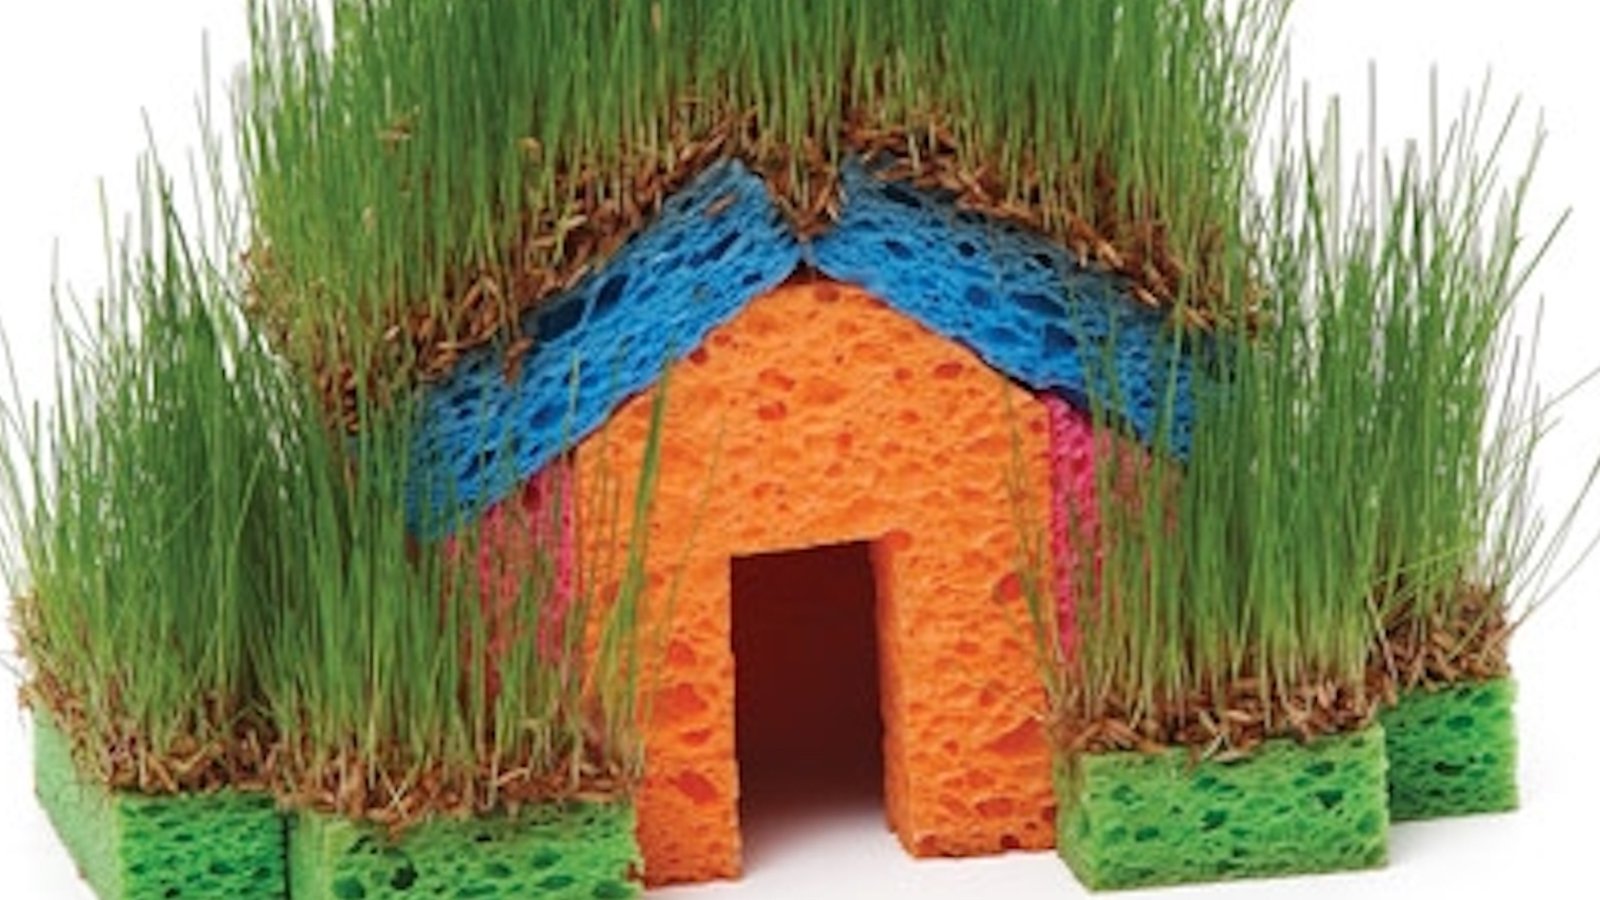 Un super projet printanier à réaliser avec les enfants: une maison en herbe fraiche